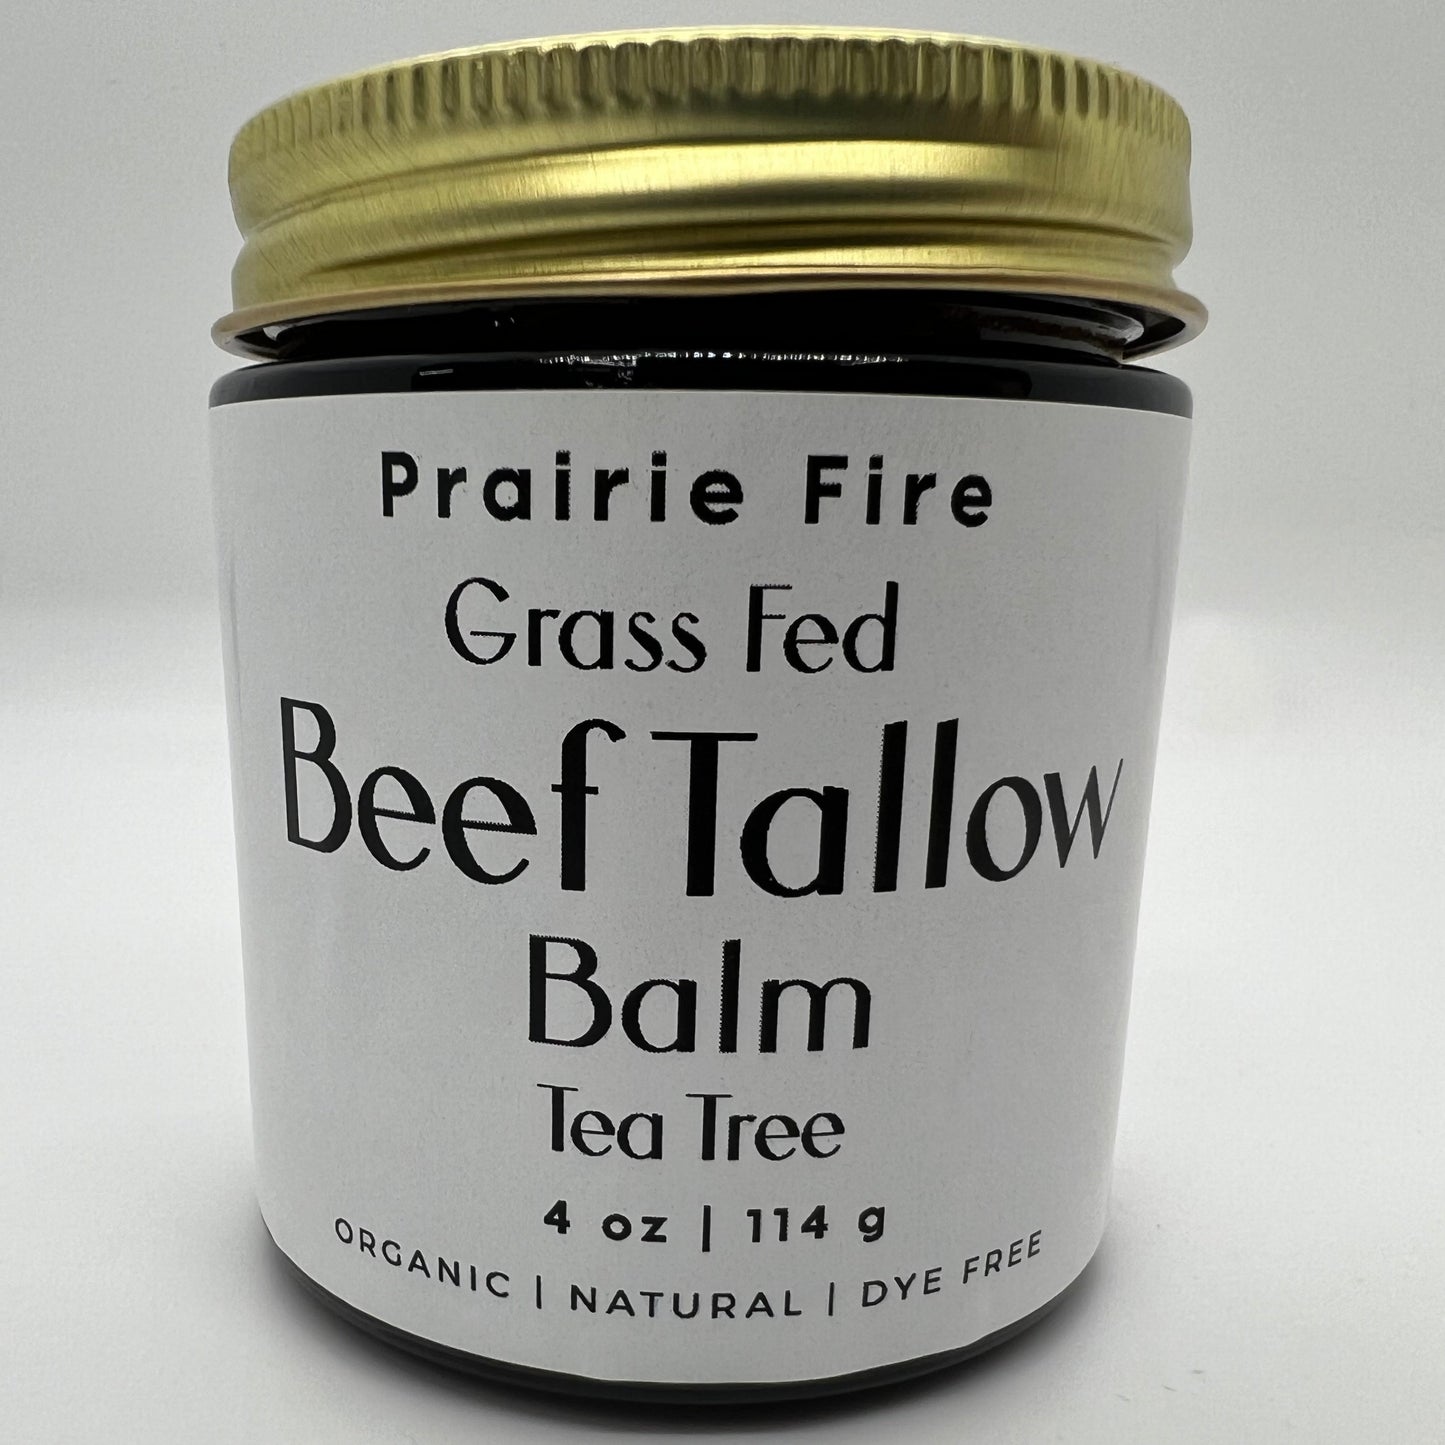 Beef Tallow Balm - 4 oz - Organic Grass Fed - Body Butter - Prairie Fire Kansas Native Pasture